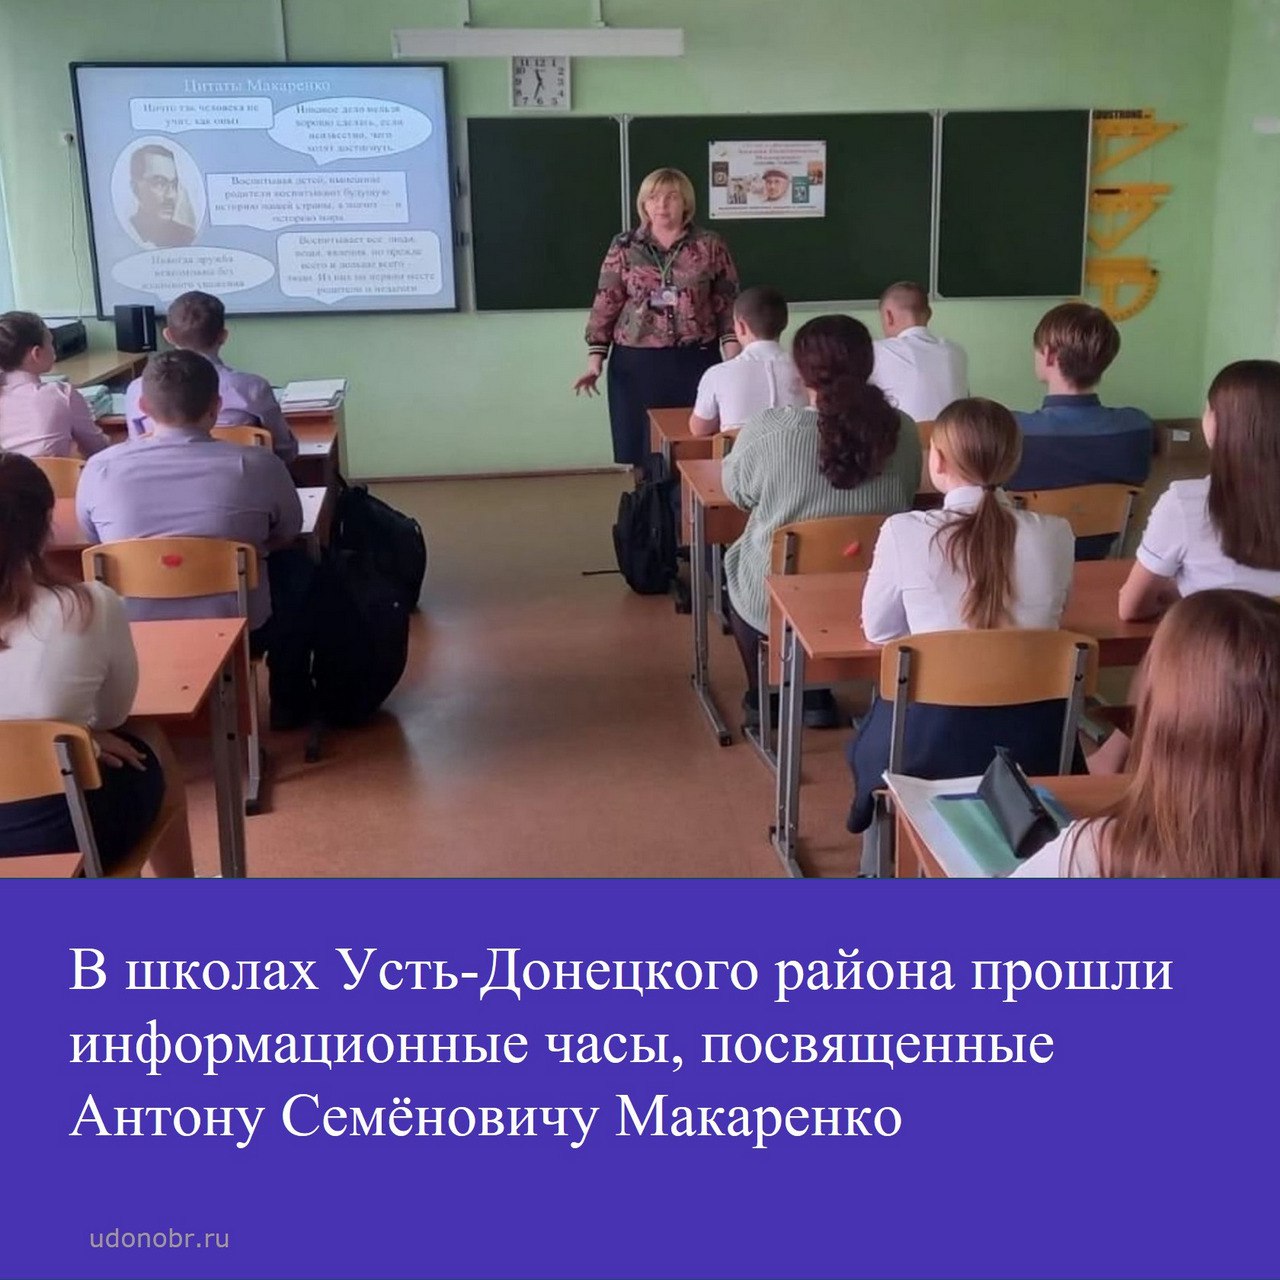 В школах Усть-Донецкого района прошли информационные часы, посвящённые Антону Семёновичу Макаренко